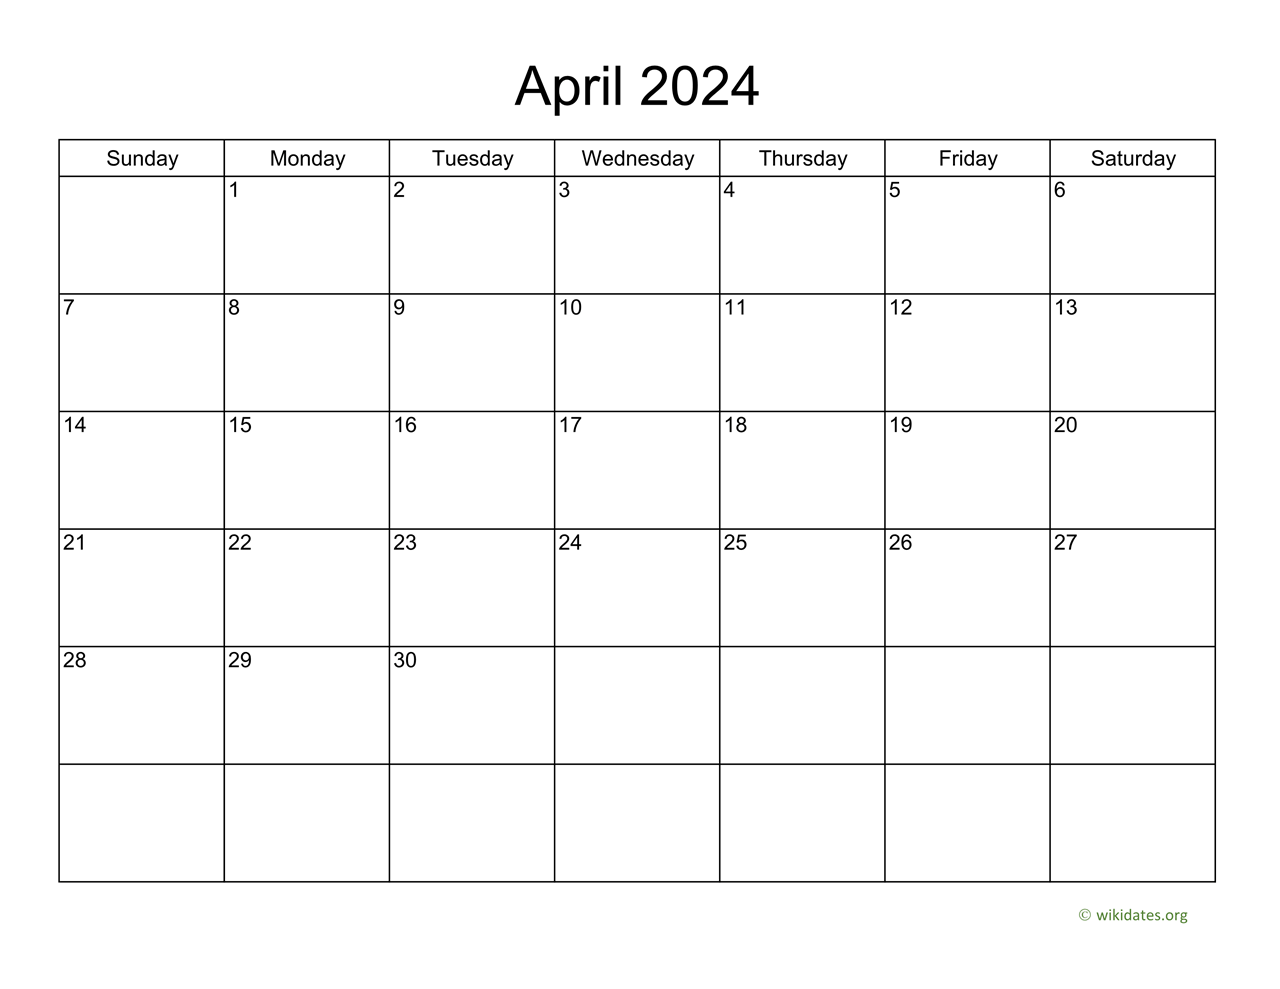 Basic Calendar for April 2024